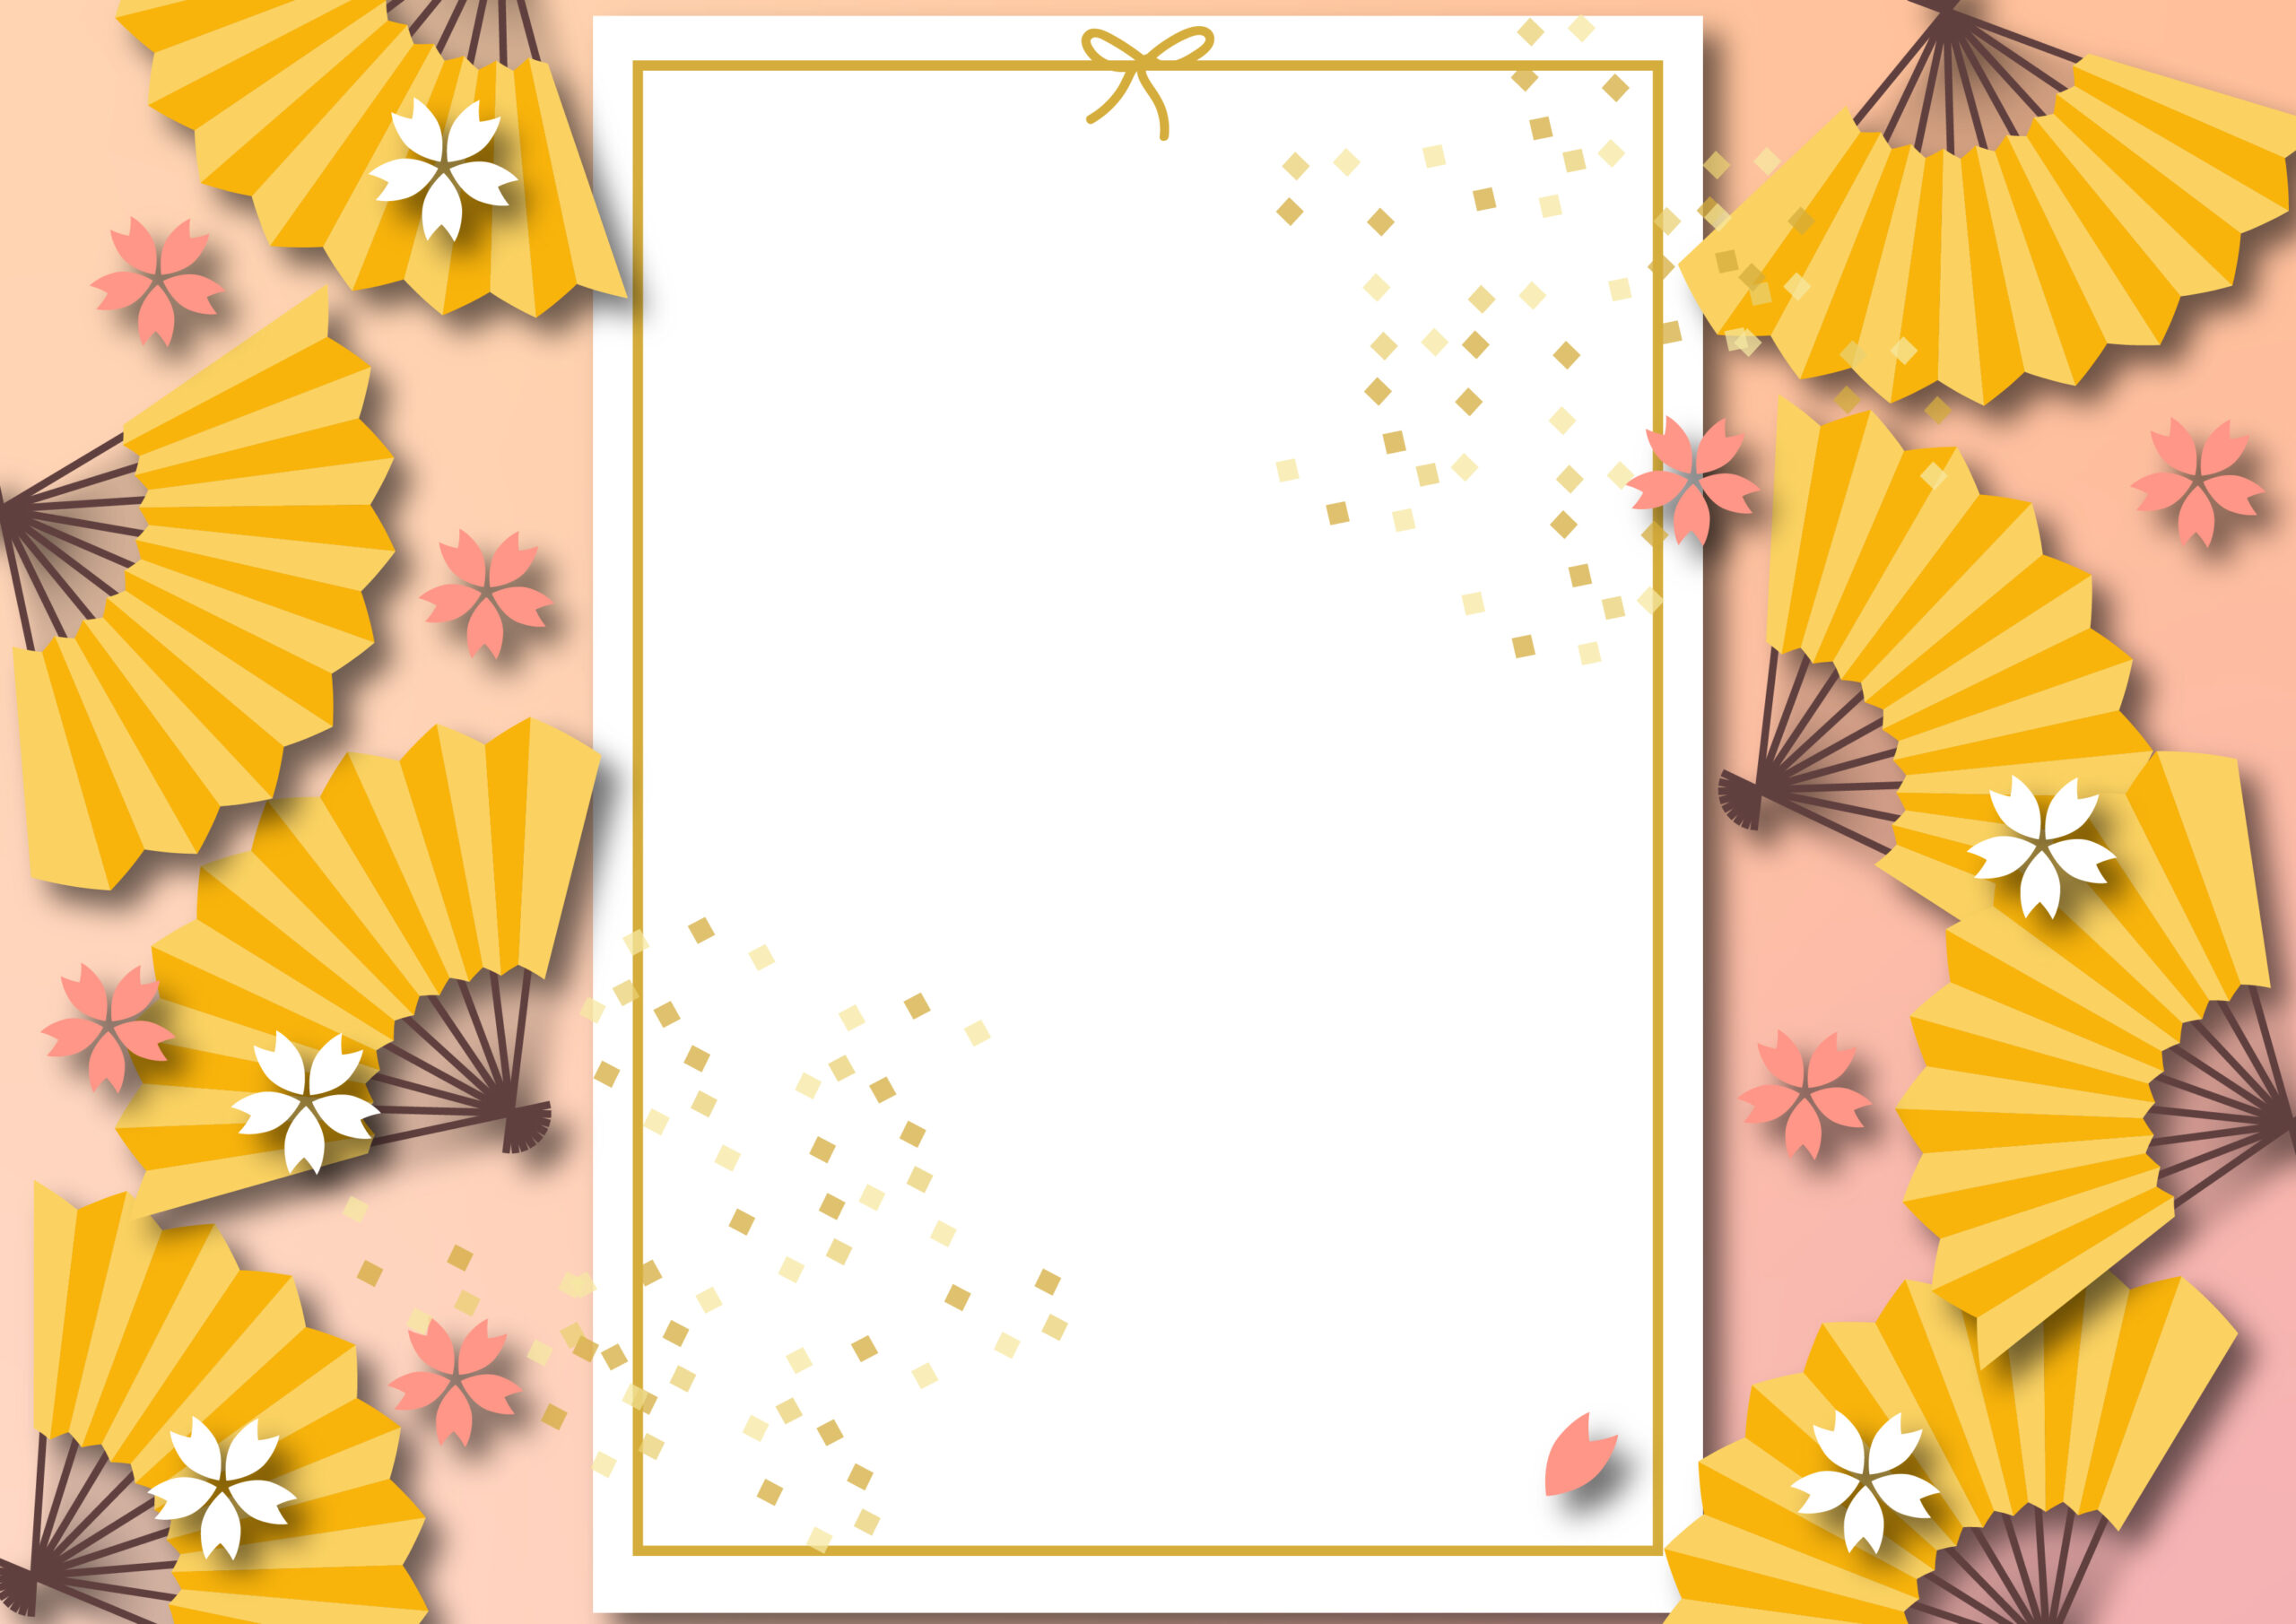 年賀状作成に使えるかわいいフレーム素材！扇子と桜、金色の紙吹雪が舞ったおしゃれな和風デザイン！縦書きの文字入れ利用におすすめの飾り枠になります。華やかなピンクカラーで明るい年明けや年始にぴったりのテンプレートです。ダウンロード：JP